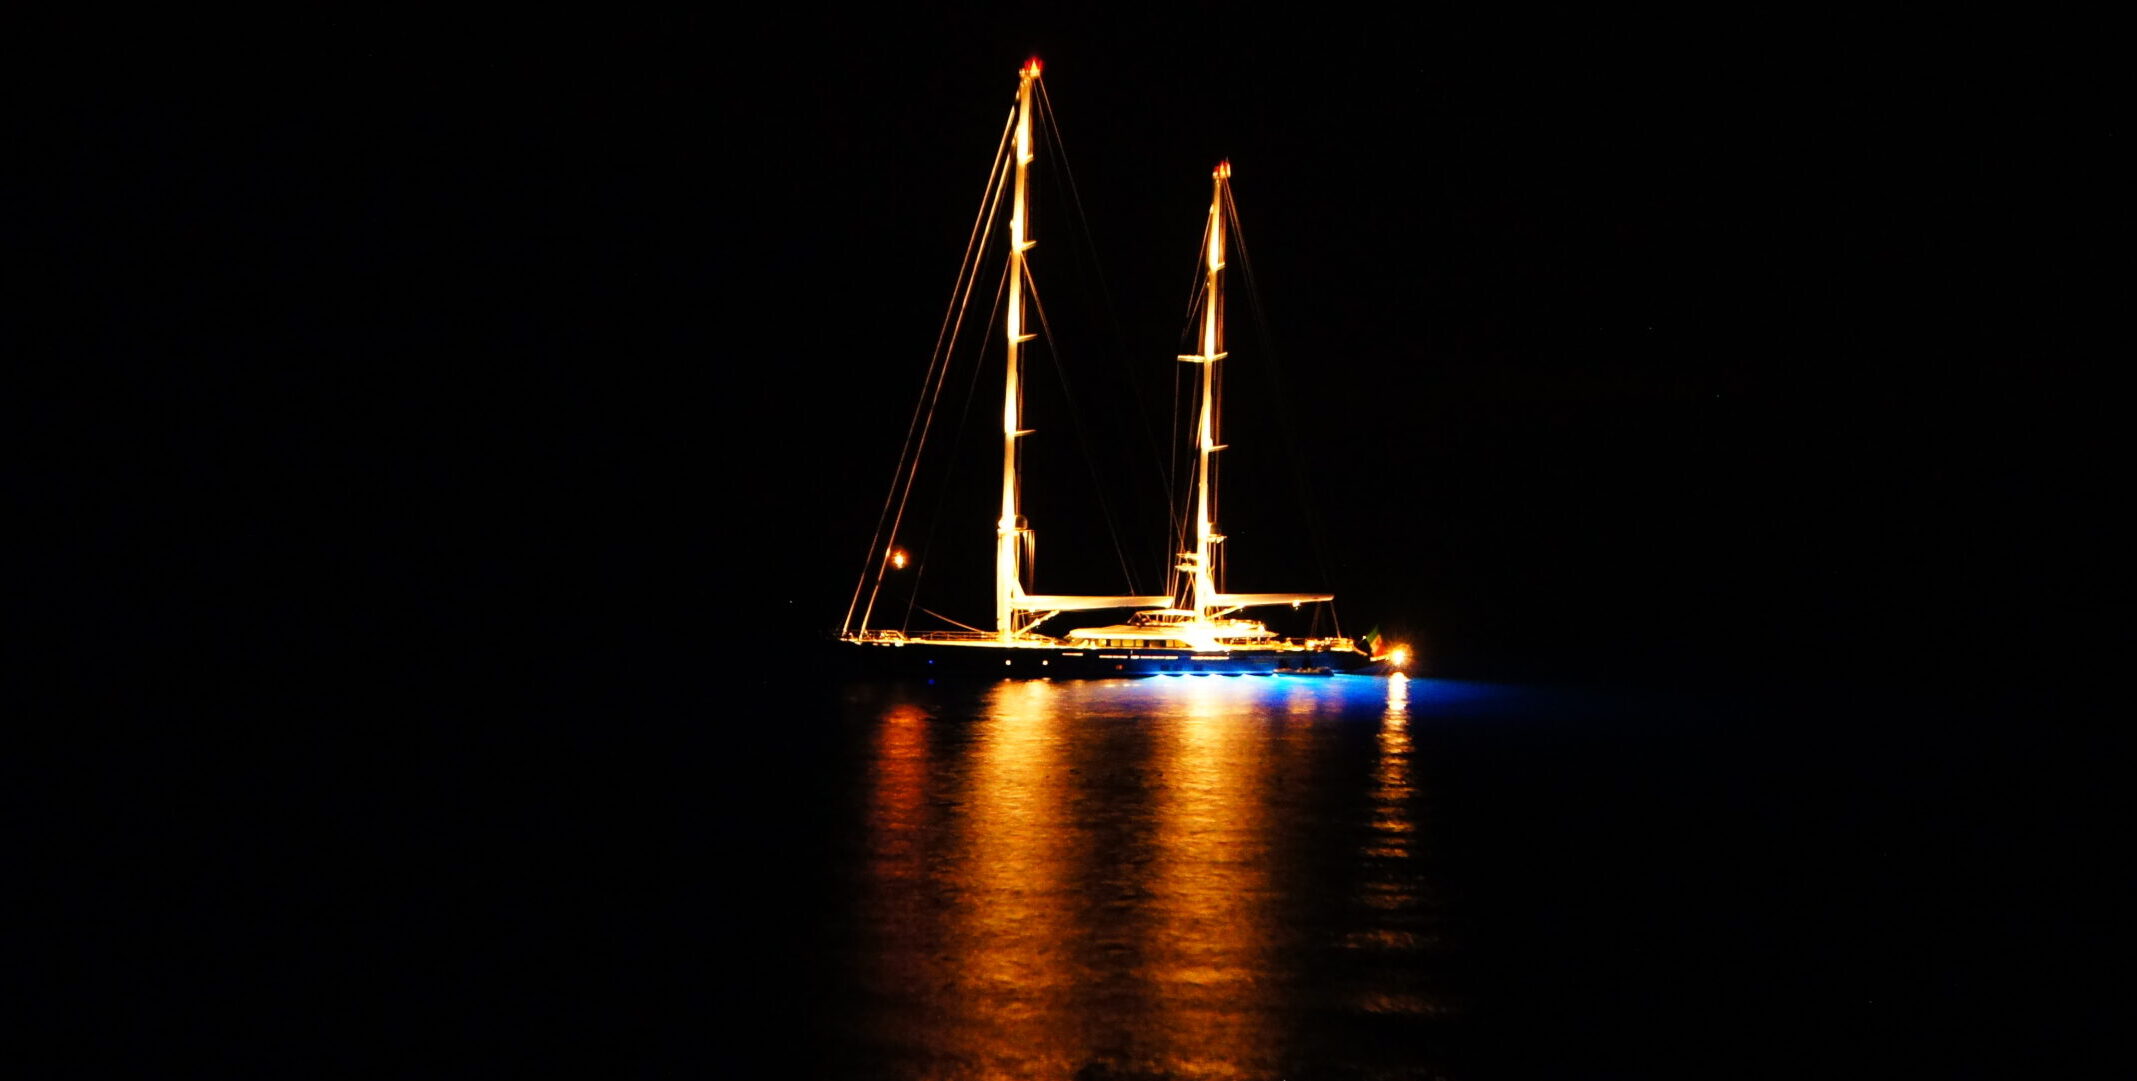 Yacht “Seven” ancorato nella rada di Capraia Isola